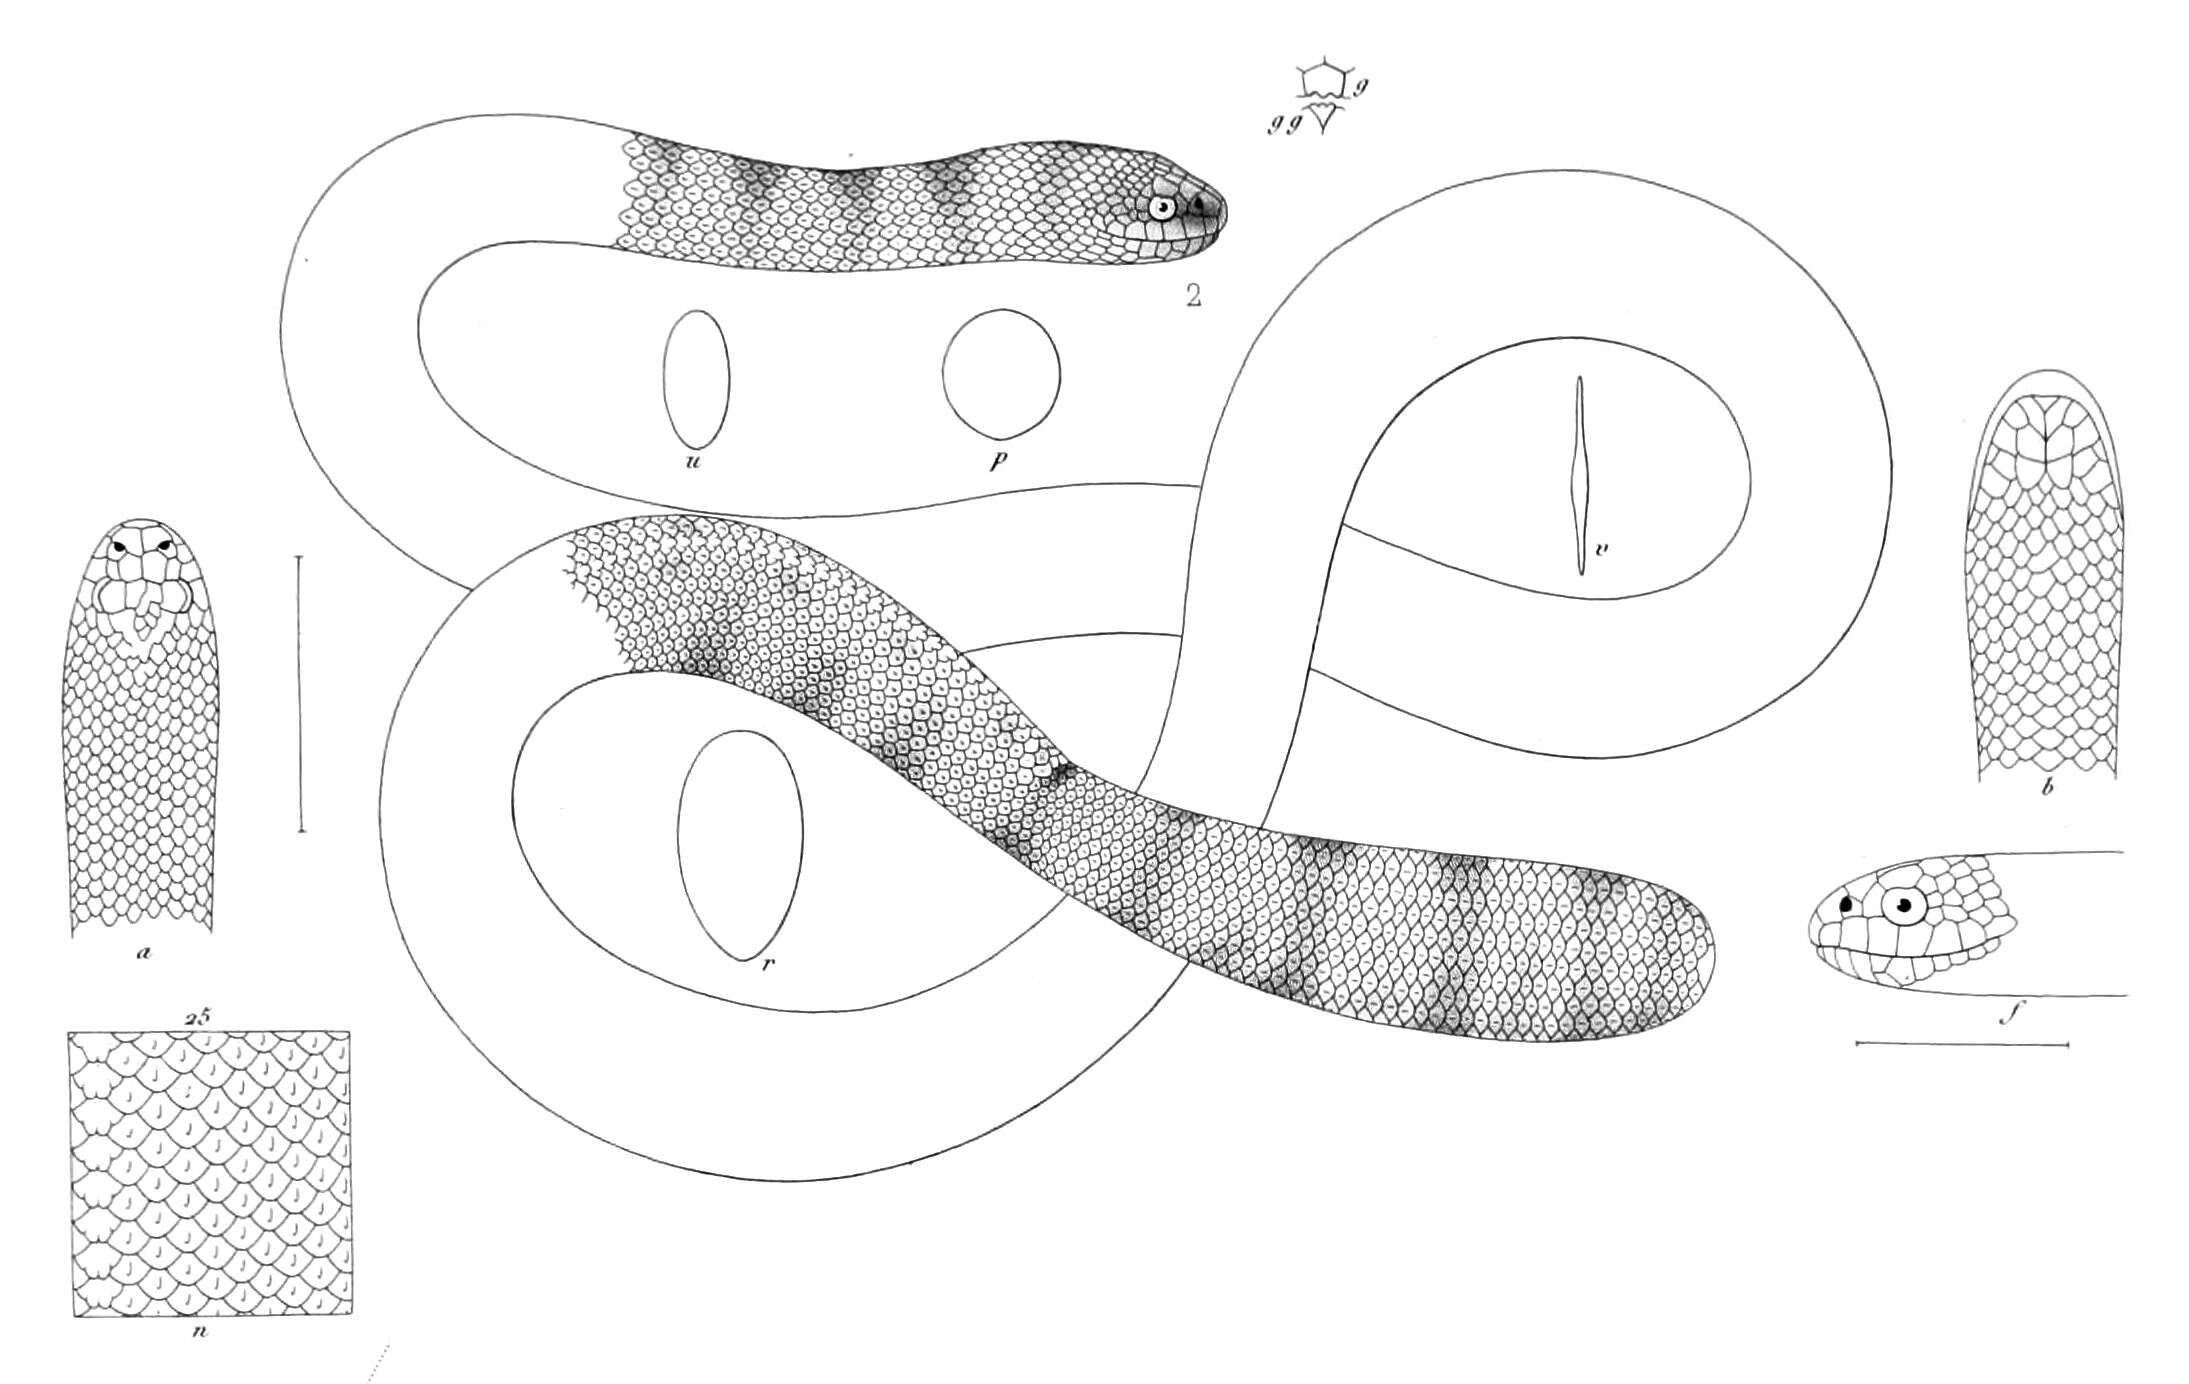 Image of Horned sea snake